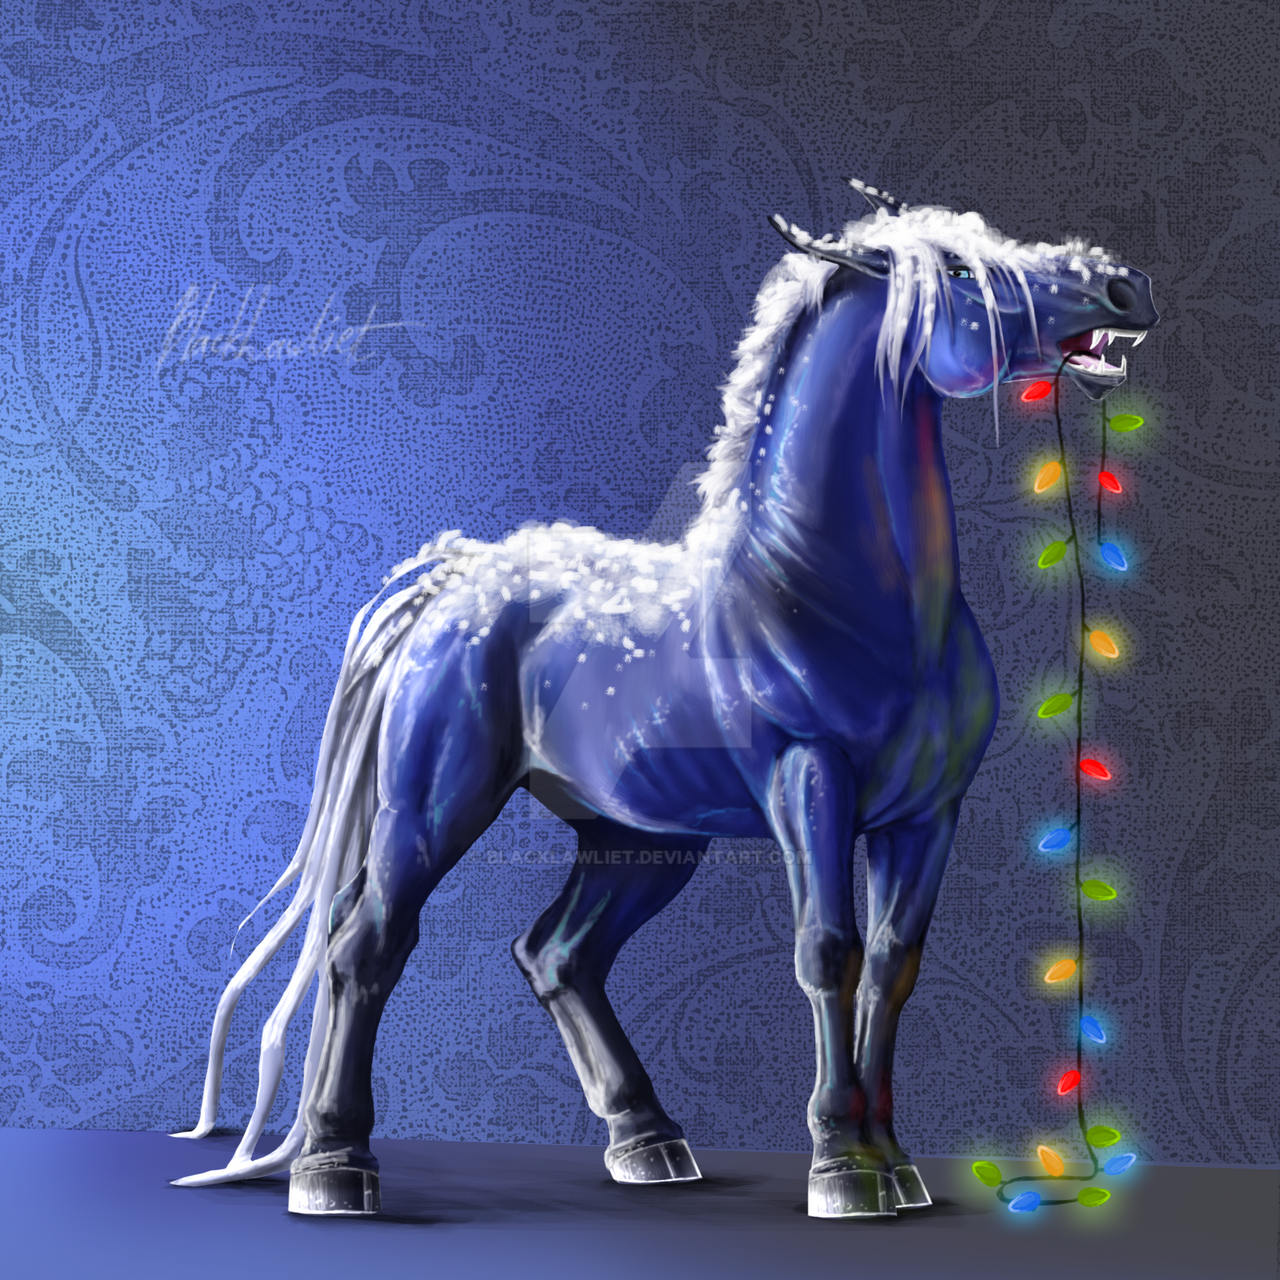 2014 год какого цвета. Ловади лошади. Лошадь арт. Арты лошадей. Новогодние лошади арты.